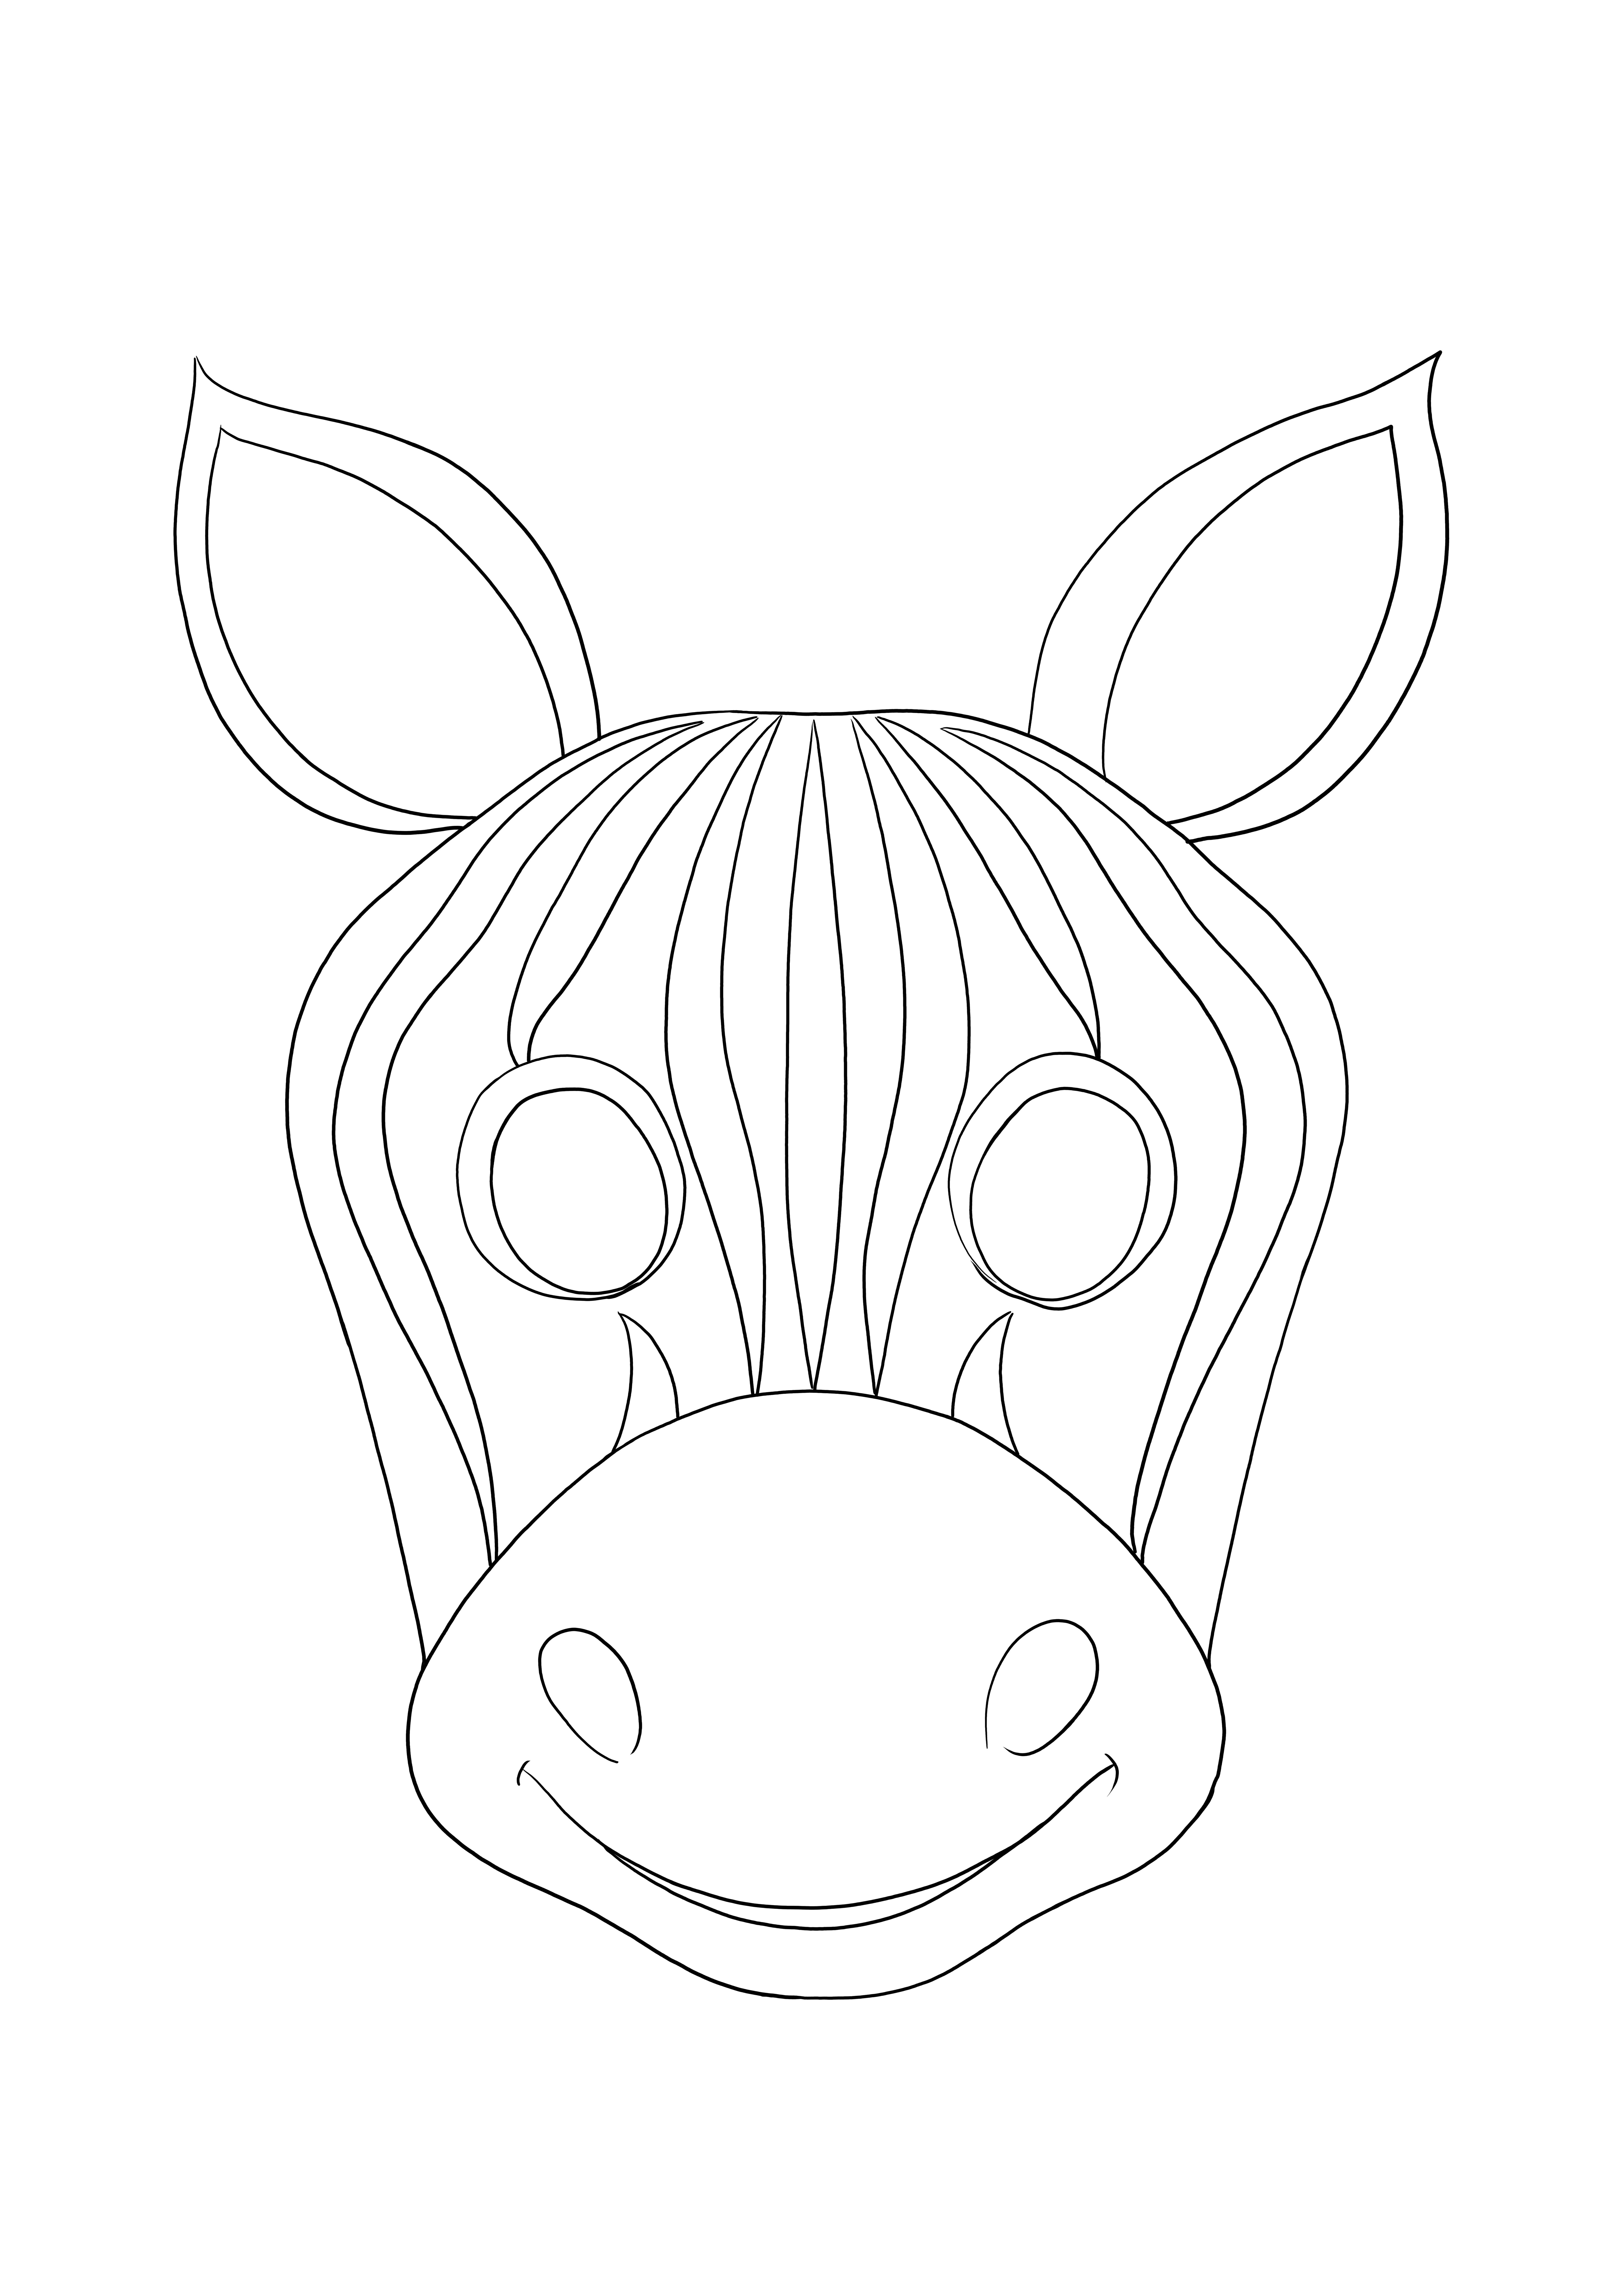 Colorazione semplice e facile di una maschera zebra per la colorazione e la stampa gratuite